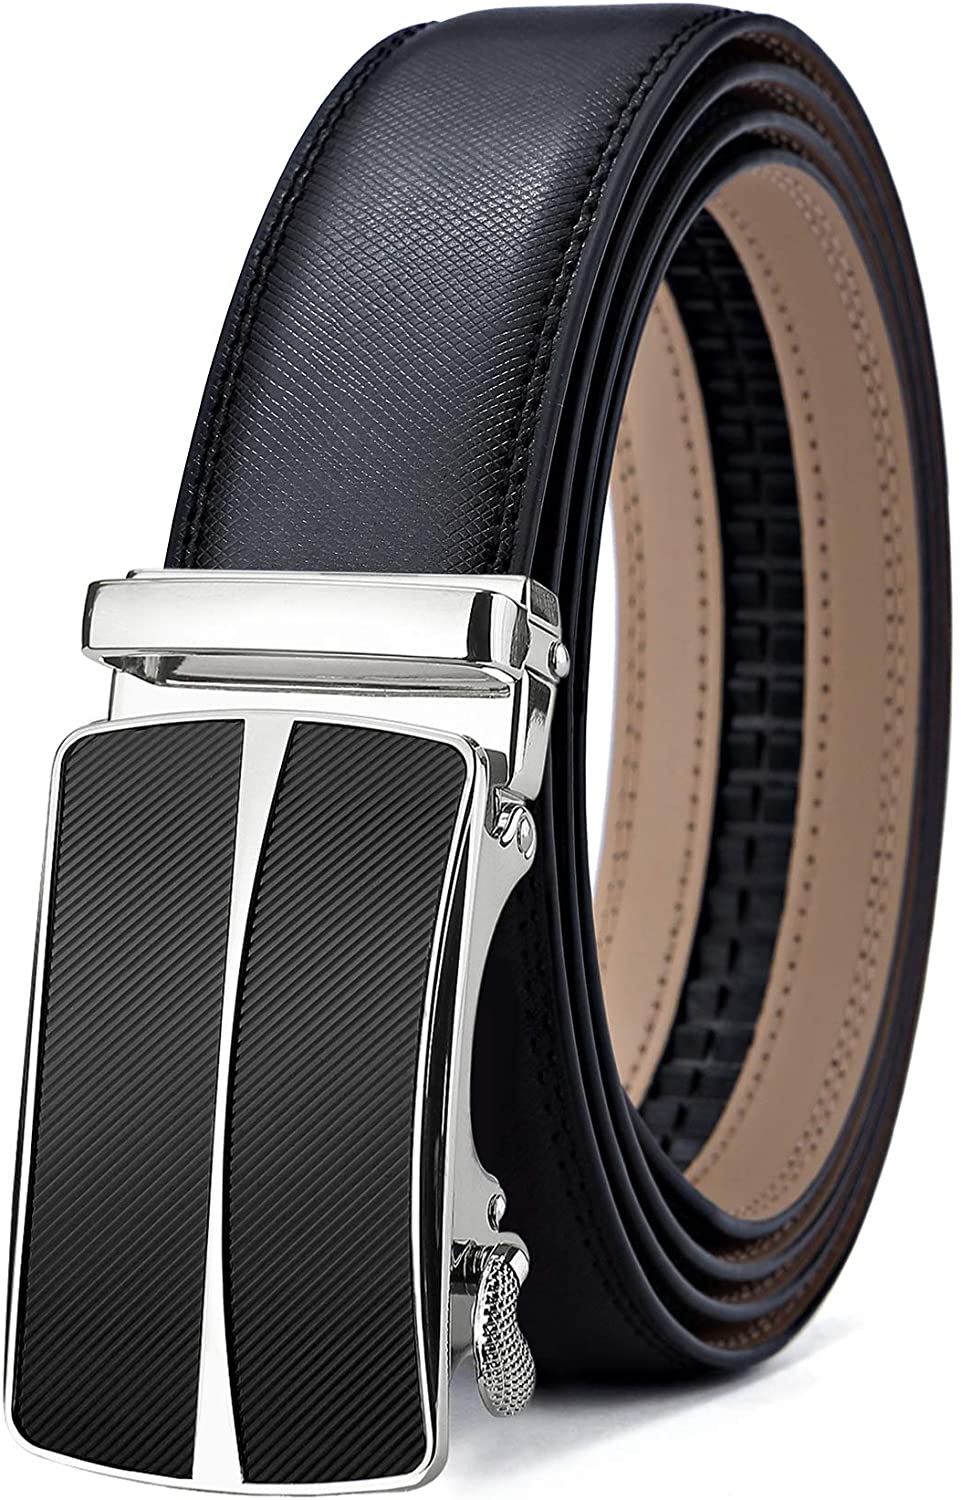 Mens Belt,Bulliant Slide Ratchet Belt for Men with Genuine Leather 1 3/8,Trim to Fit